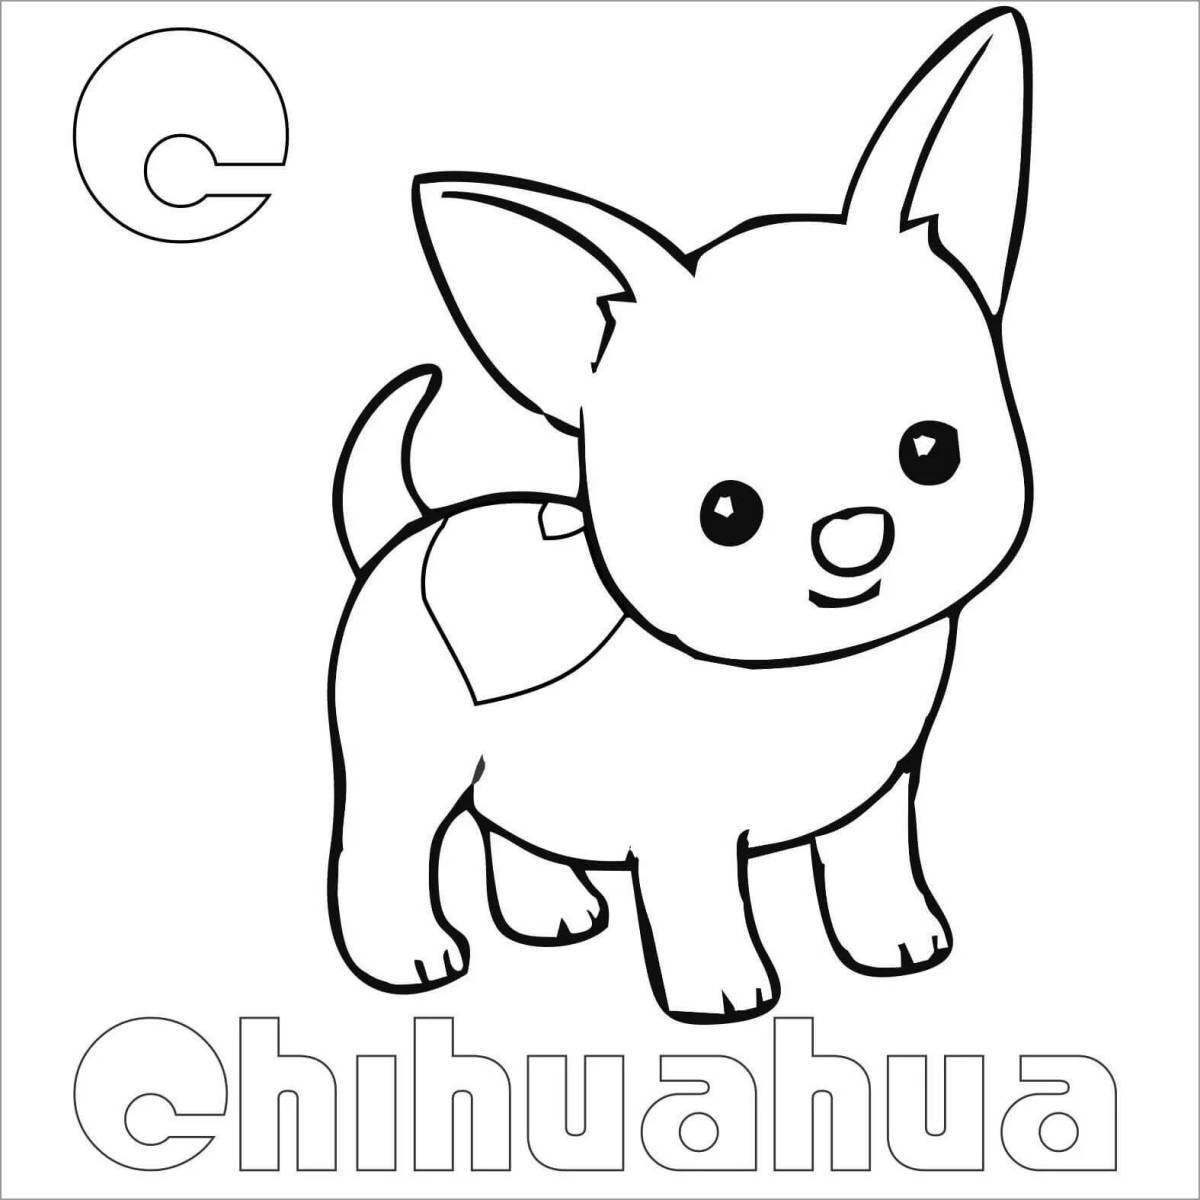 Увлекательная раскраска чихуахуа для детей